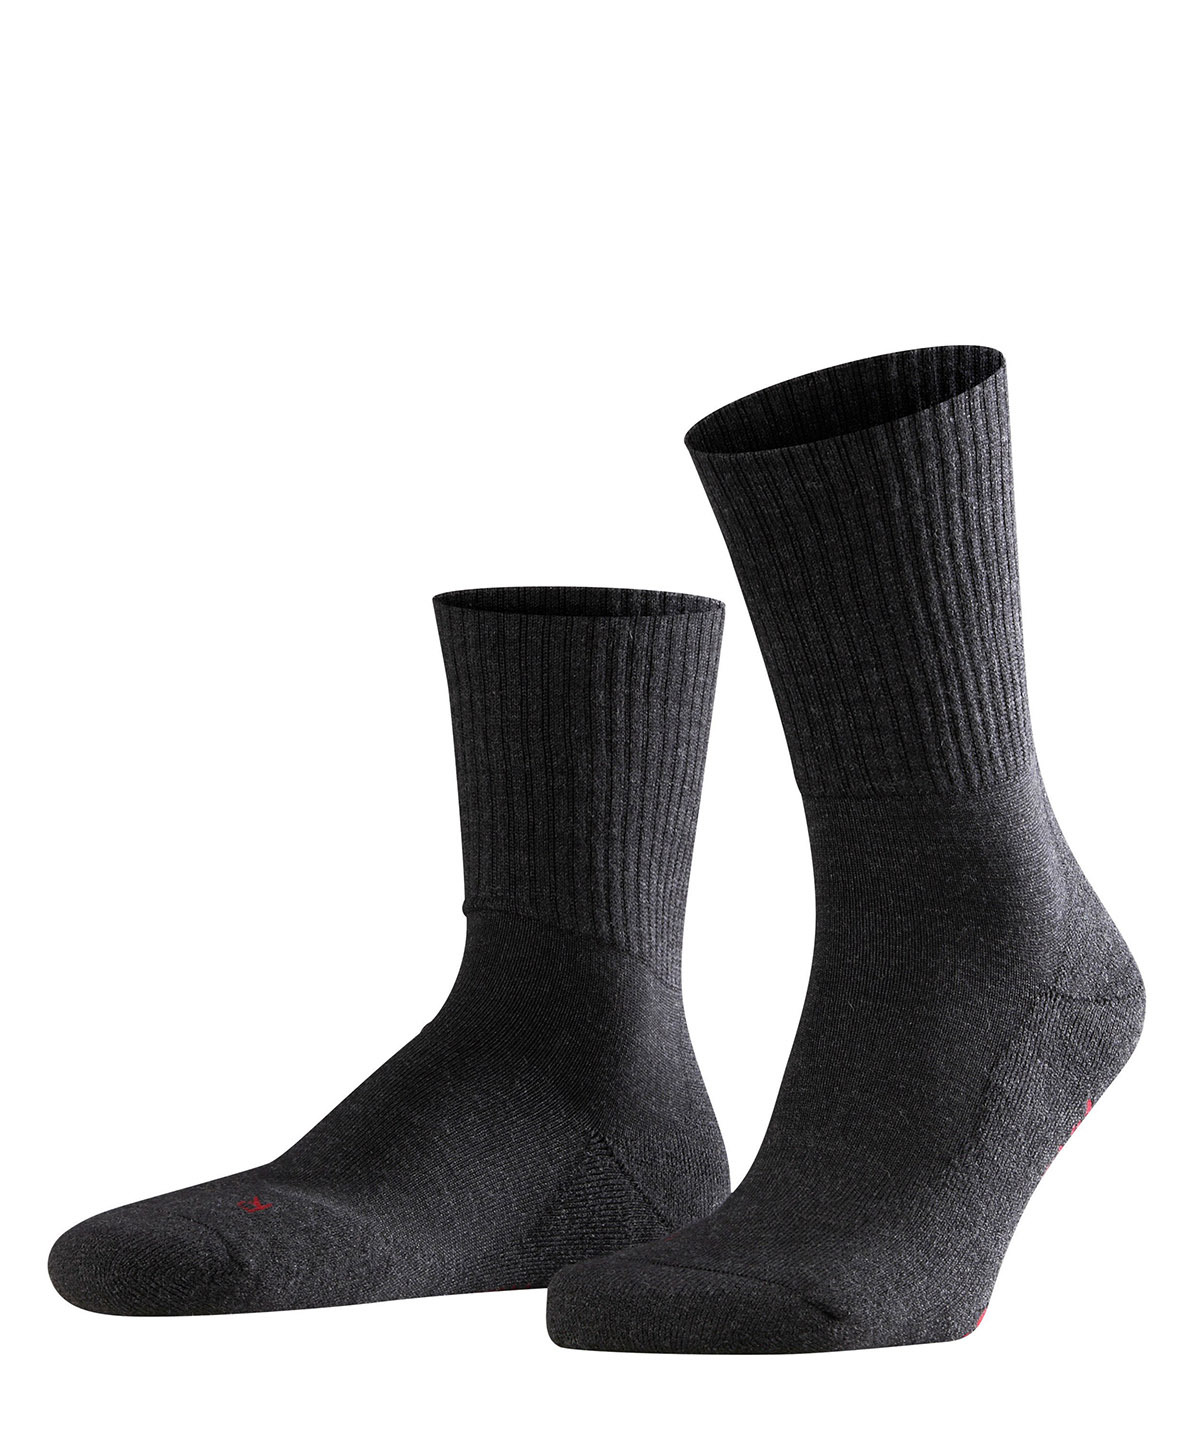 Falke Unisex Socken Hersteller: Falke Bestellnummer:4043876107233